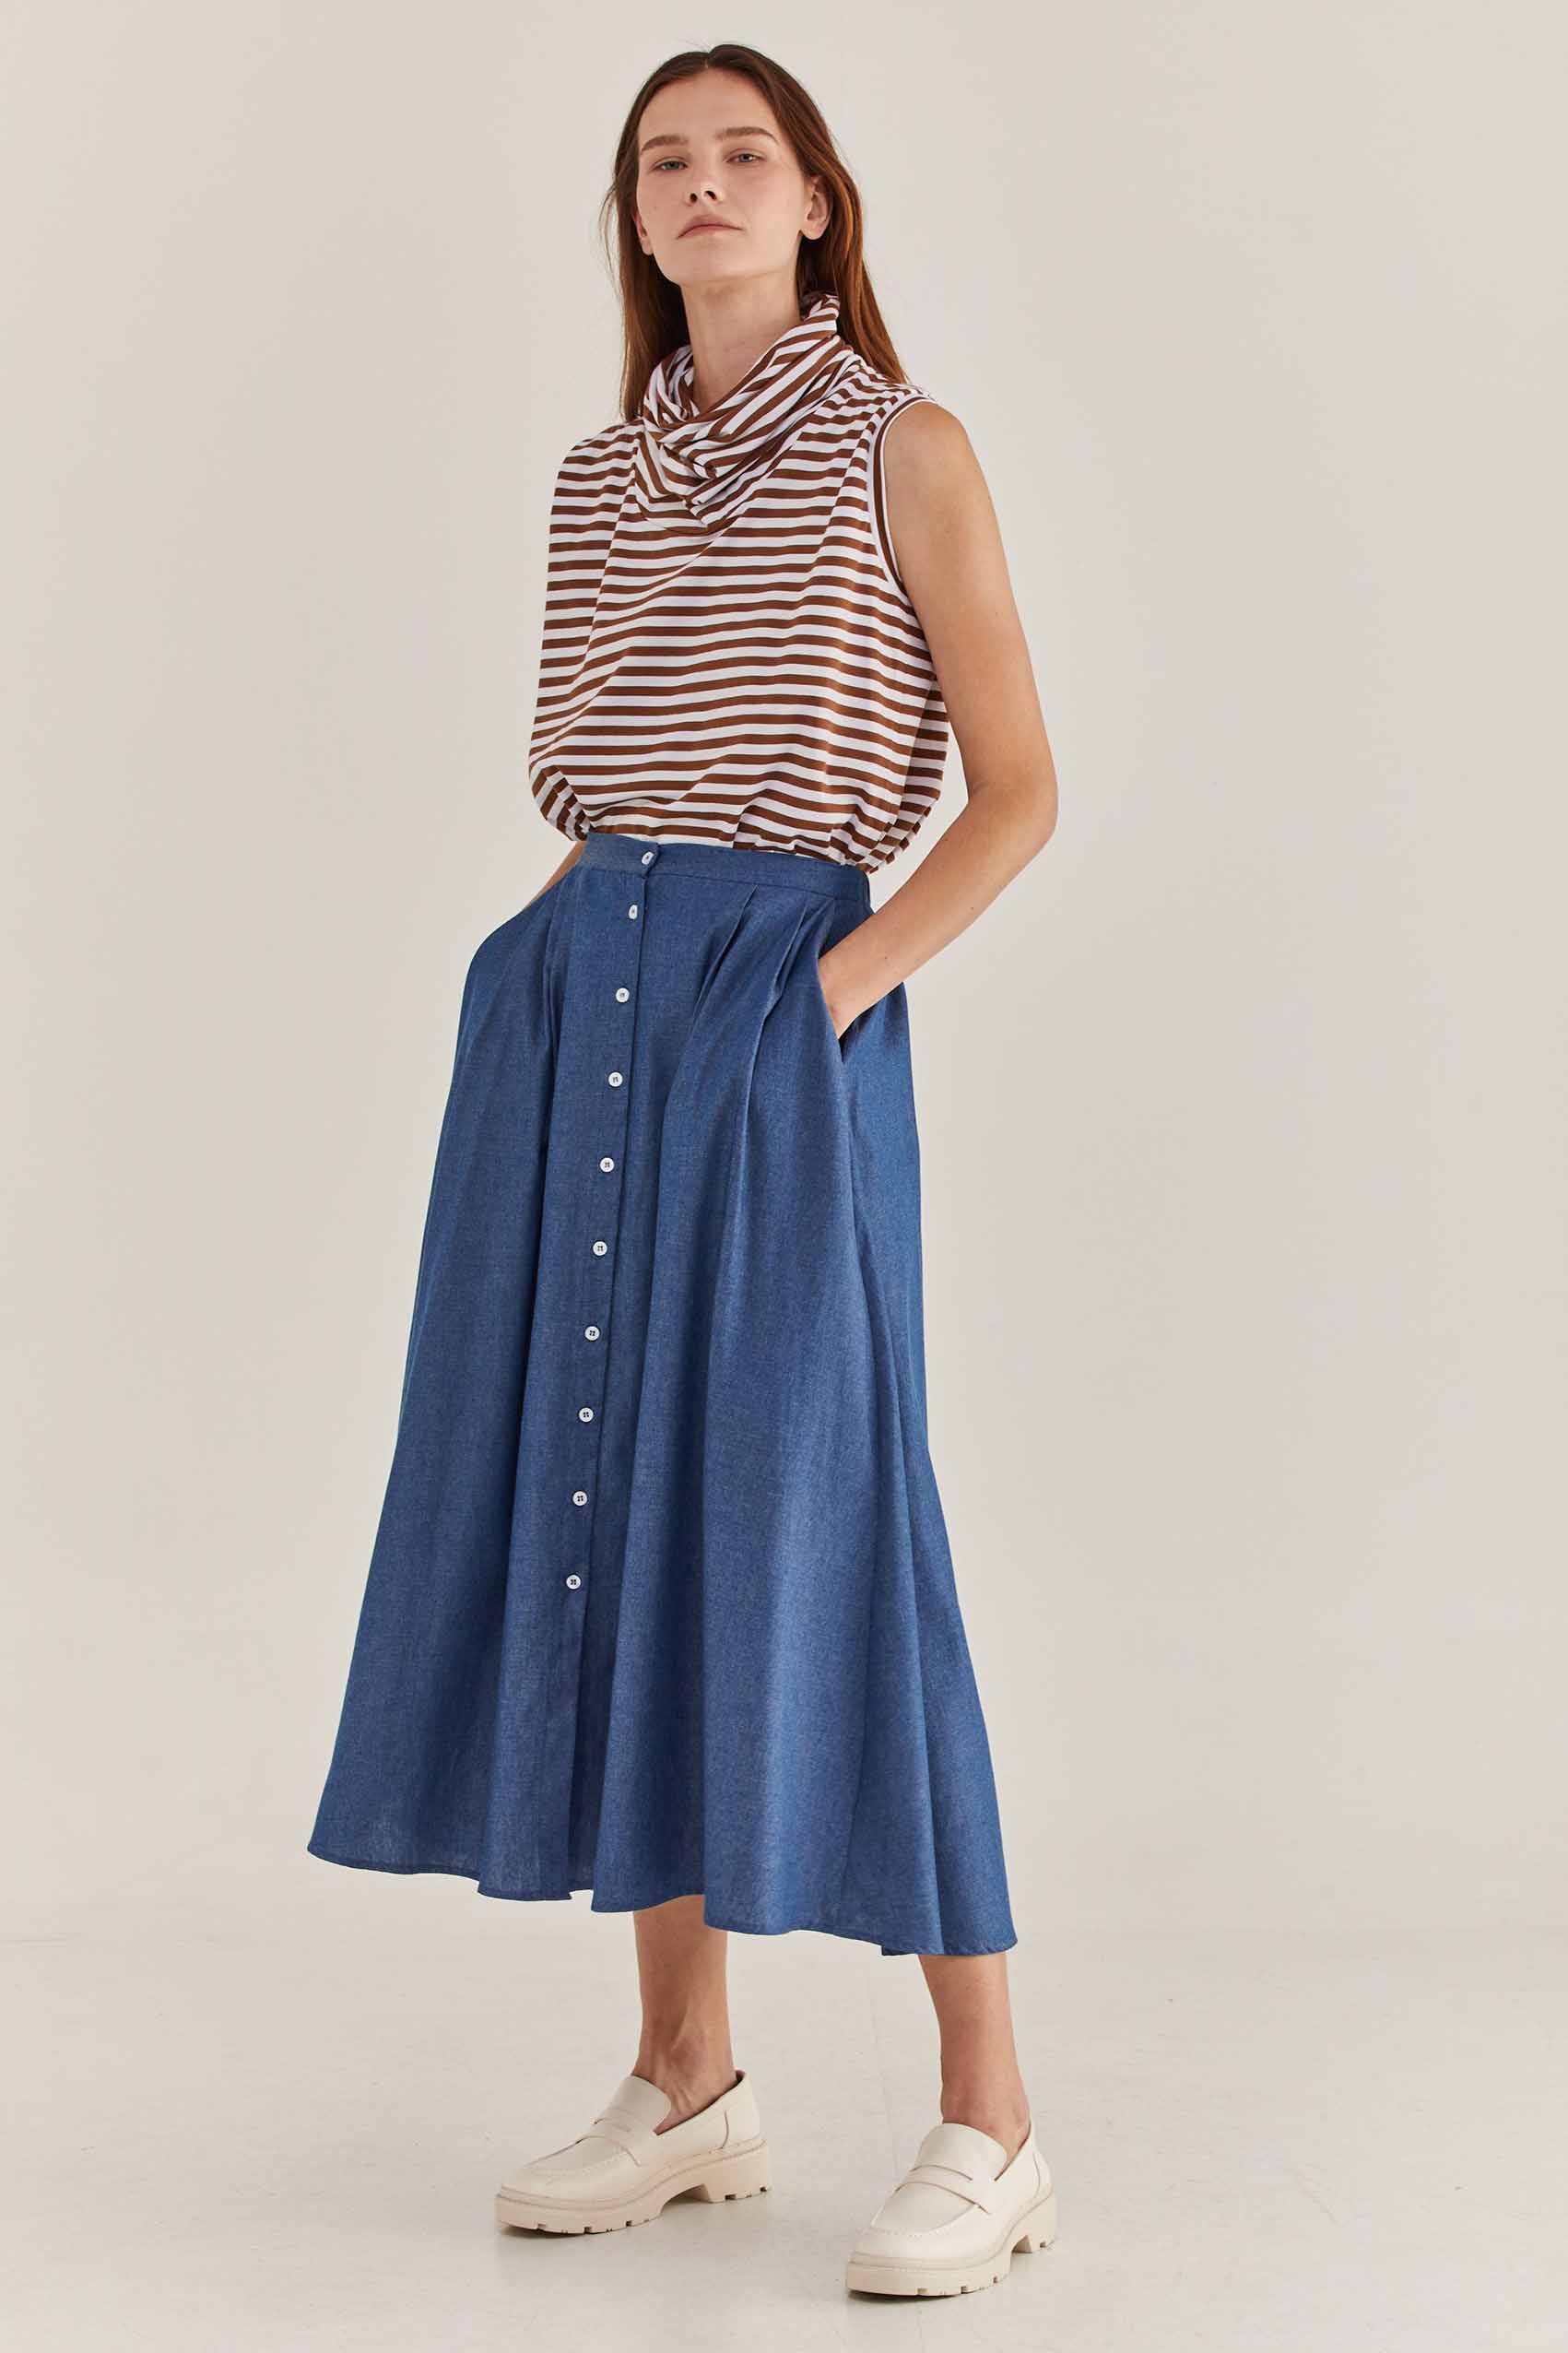 אביב קיץ TWOTONE, חצאית אלפרד 640 שח, חחולצה 330 שח, צילום דור שרון (4)